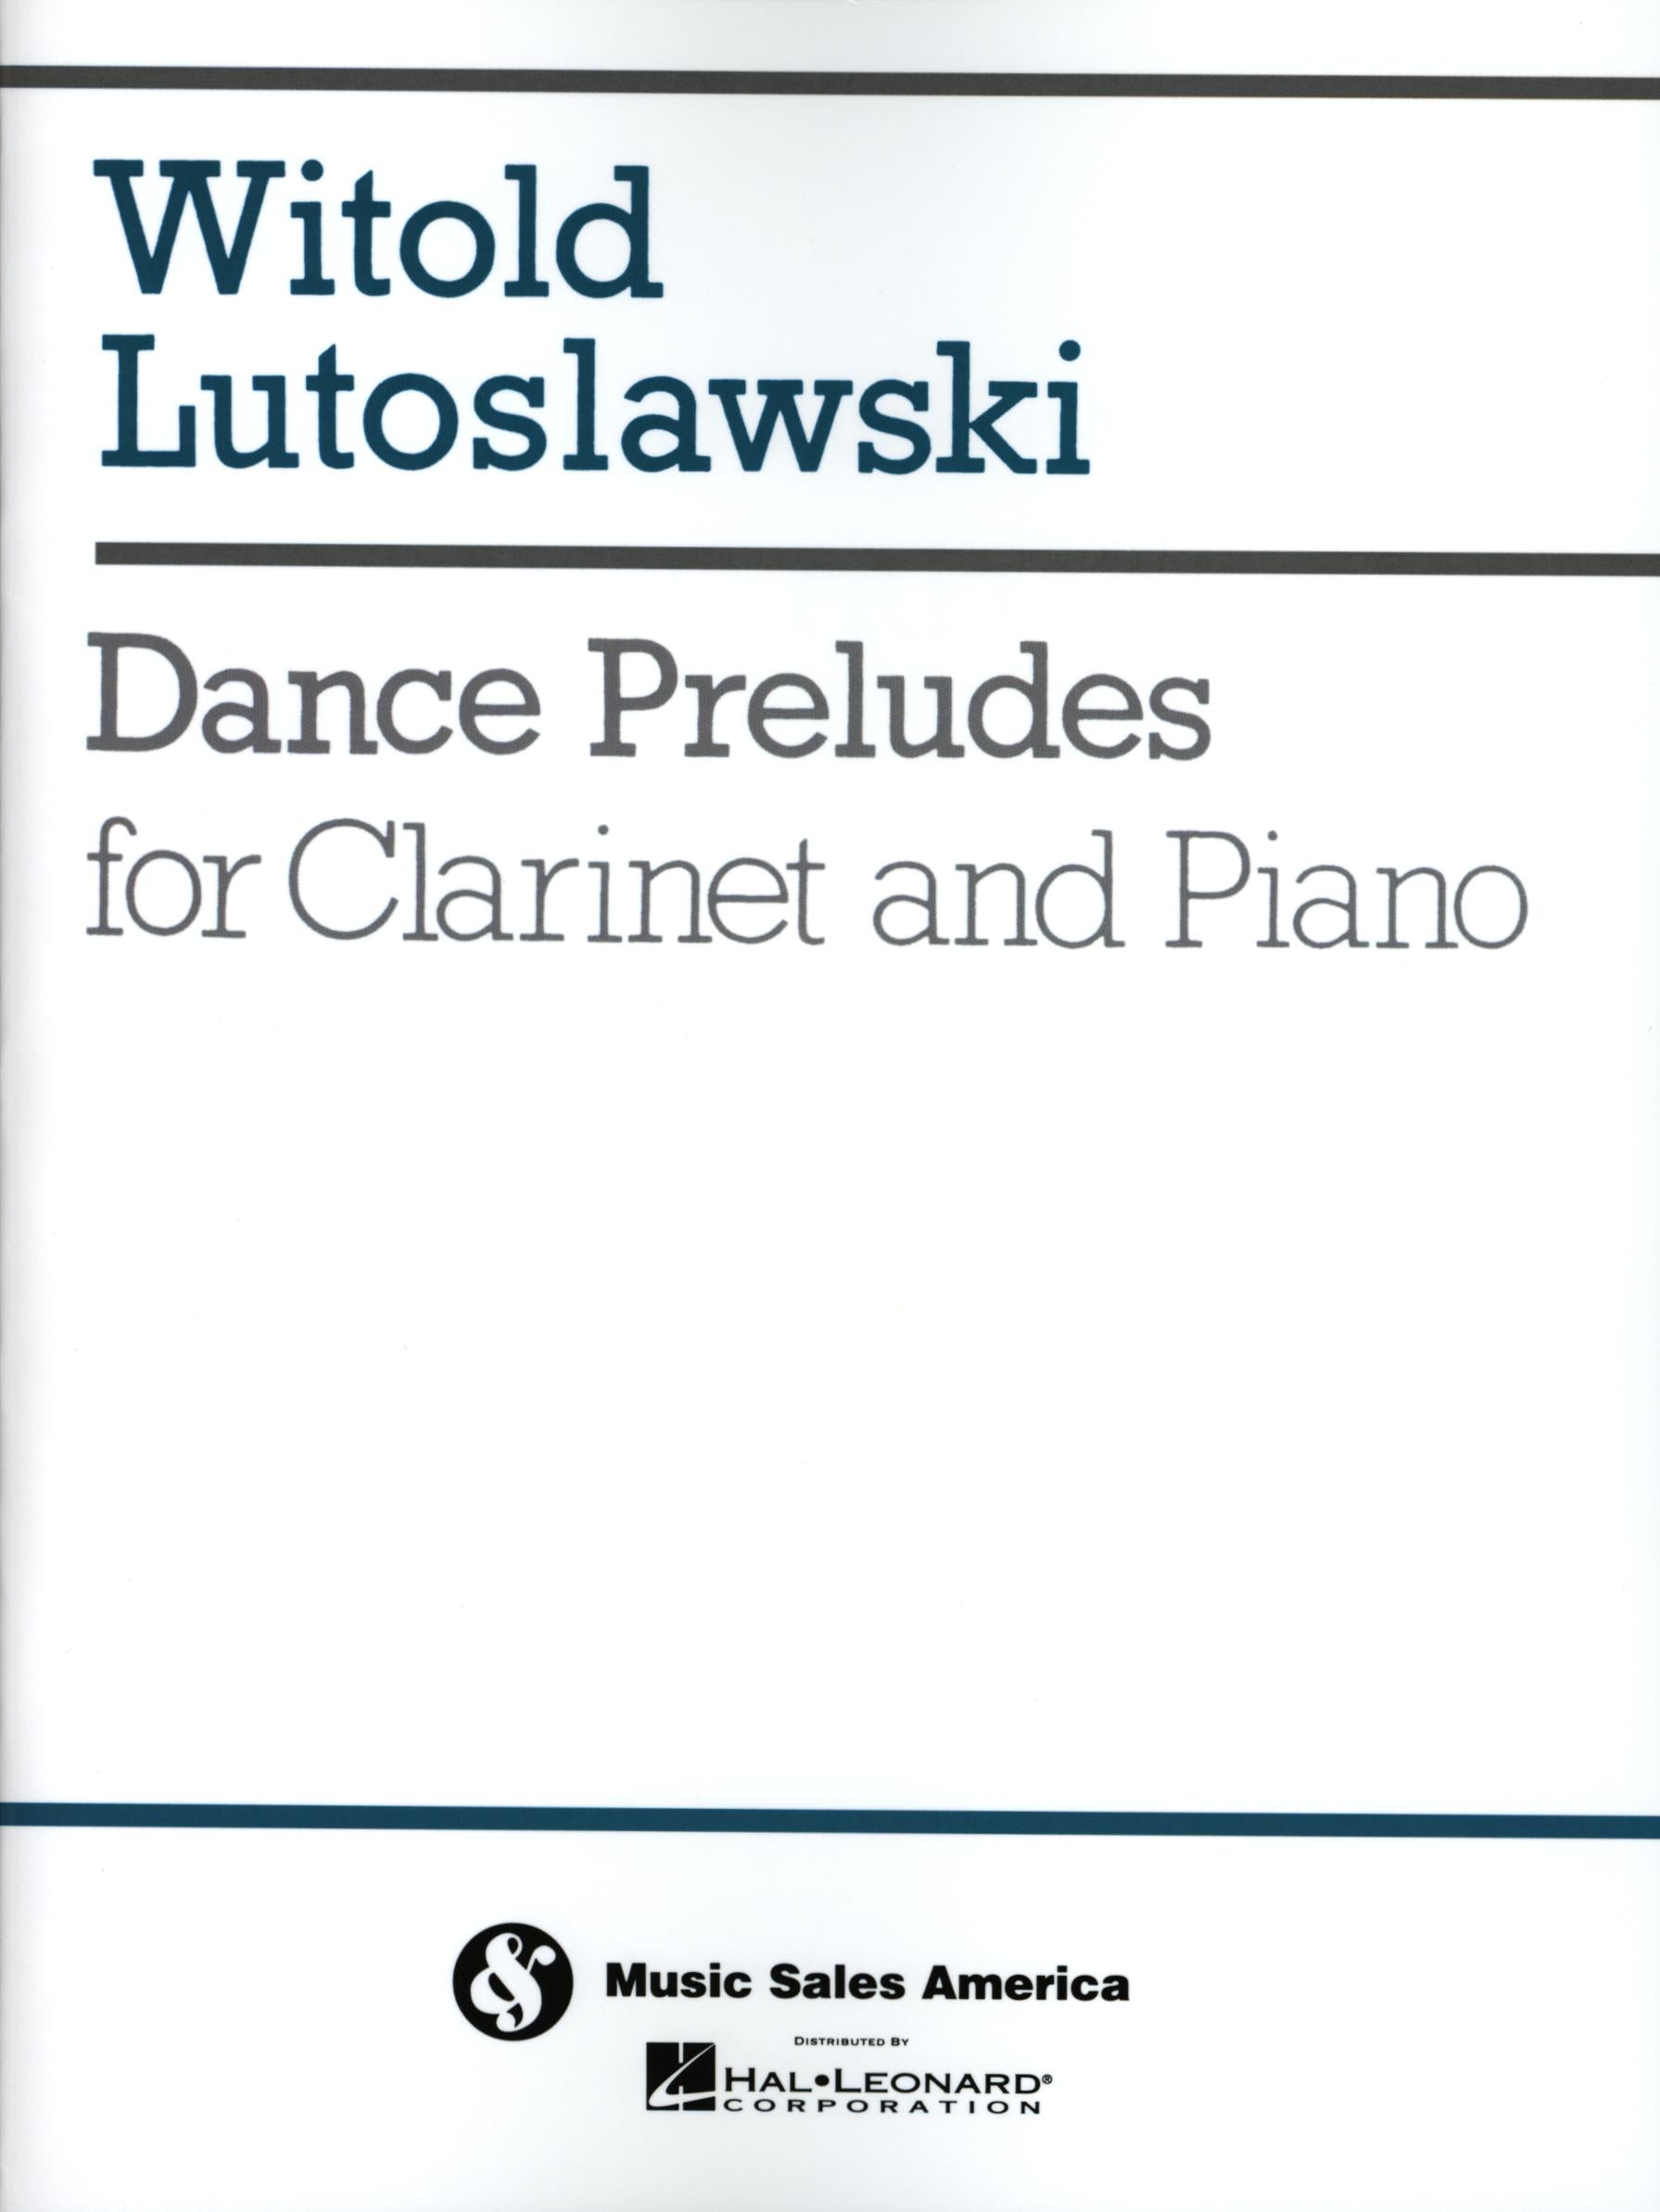 Lutosławski: Dance Preludes